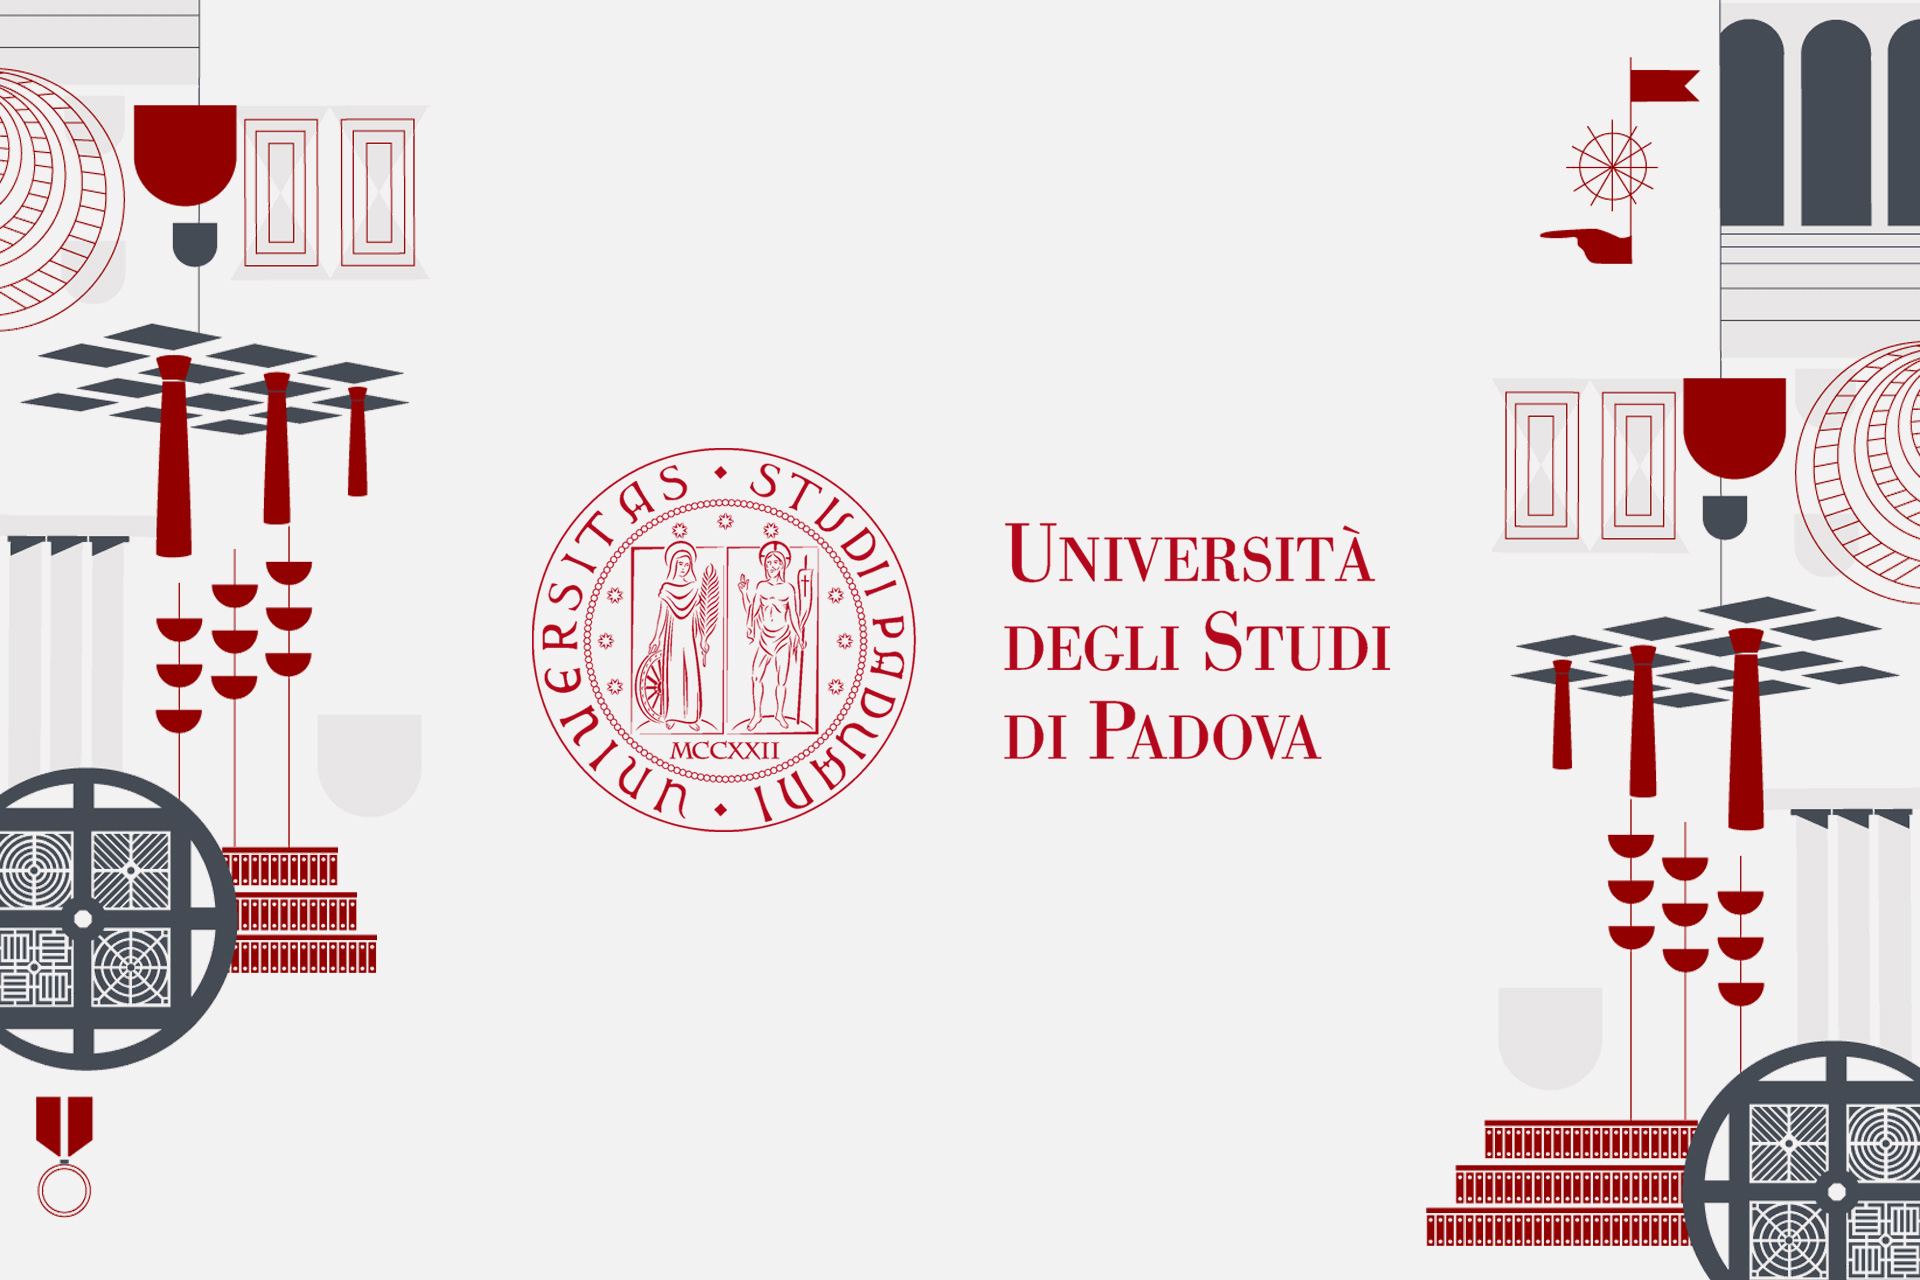 La Fondazione e il Dipartimento di Scienze Politiche, Giuridiche e Studi Internazionali dell’Università di Padova firmano un accordo triennale di collaborazione